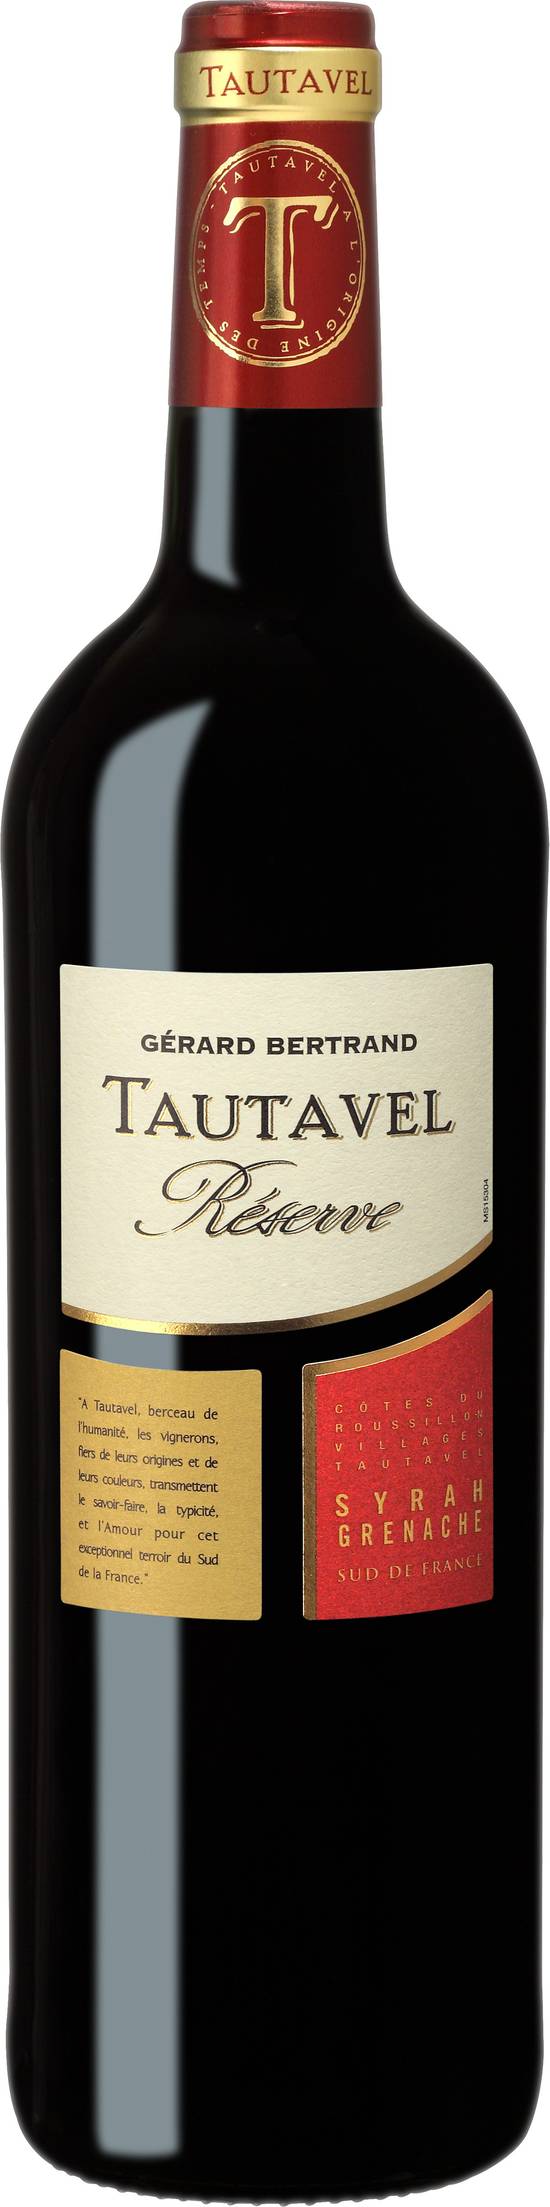 Gerard Bertrand Tautavel - Reserve AOP cotes du Roussillon villages  (750 ml)